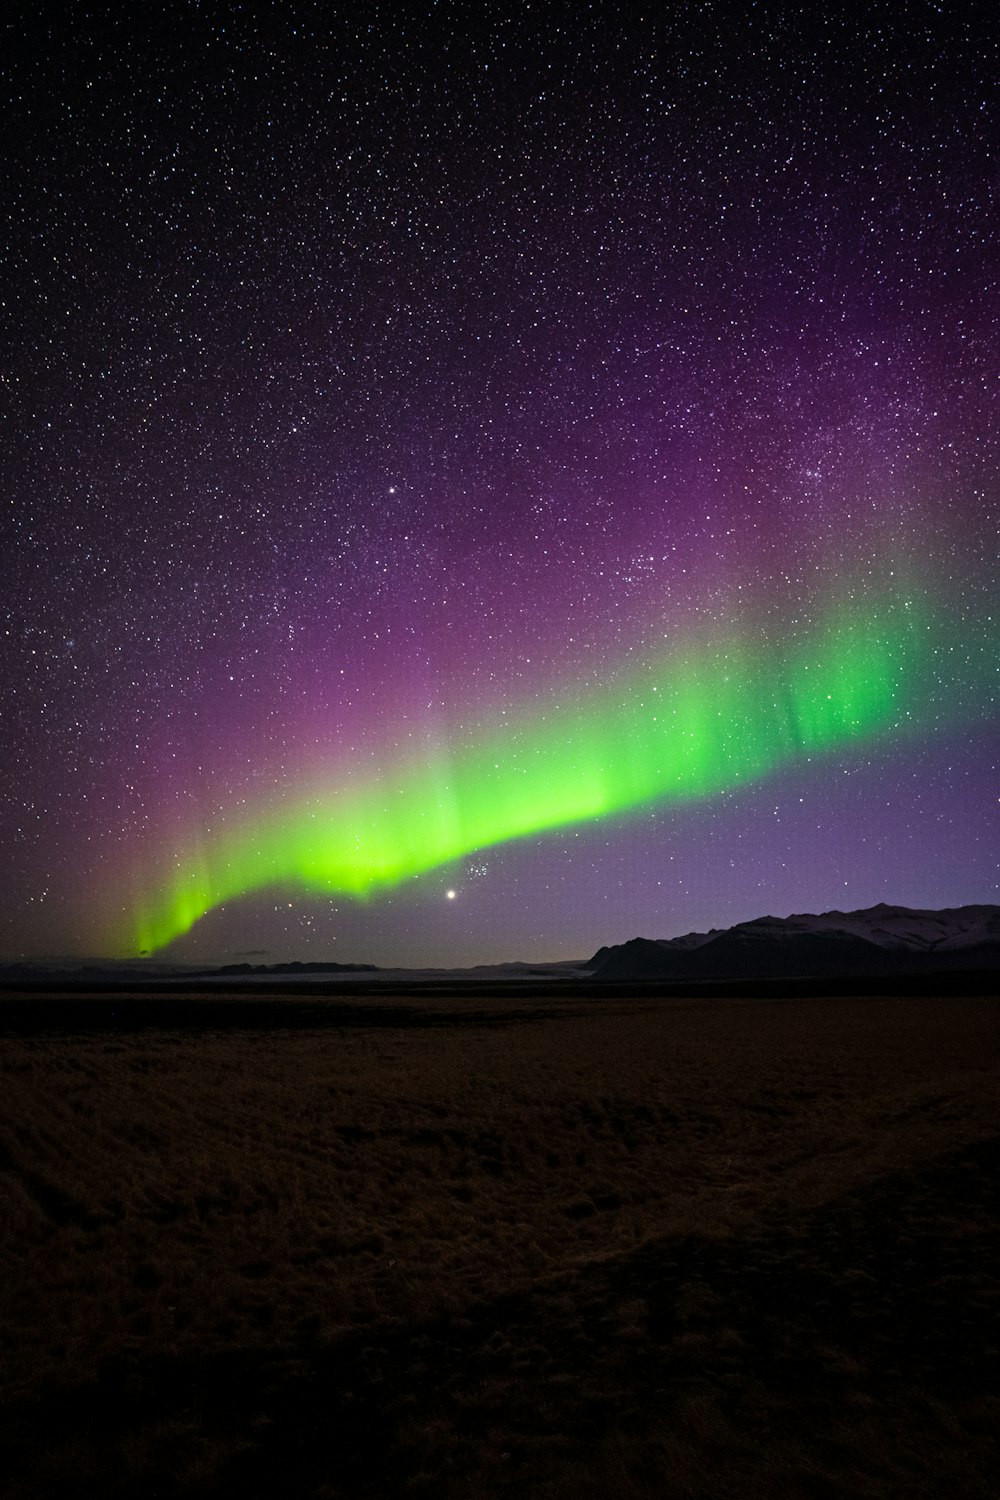 a bright green and purple aurora bore in the night sky